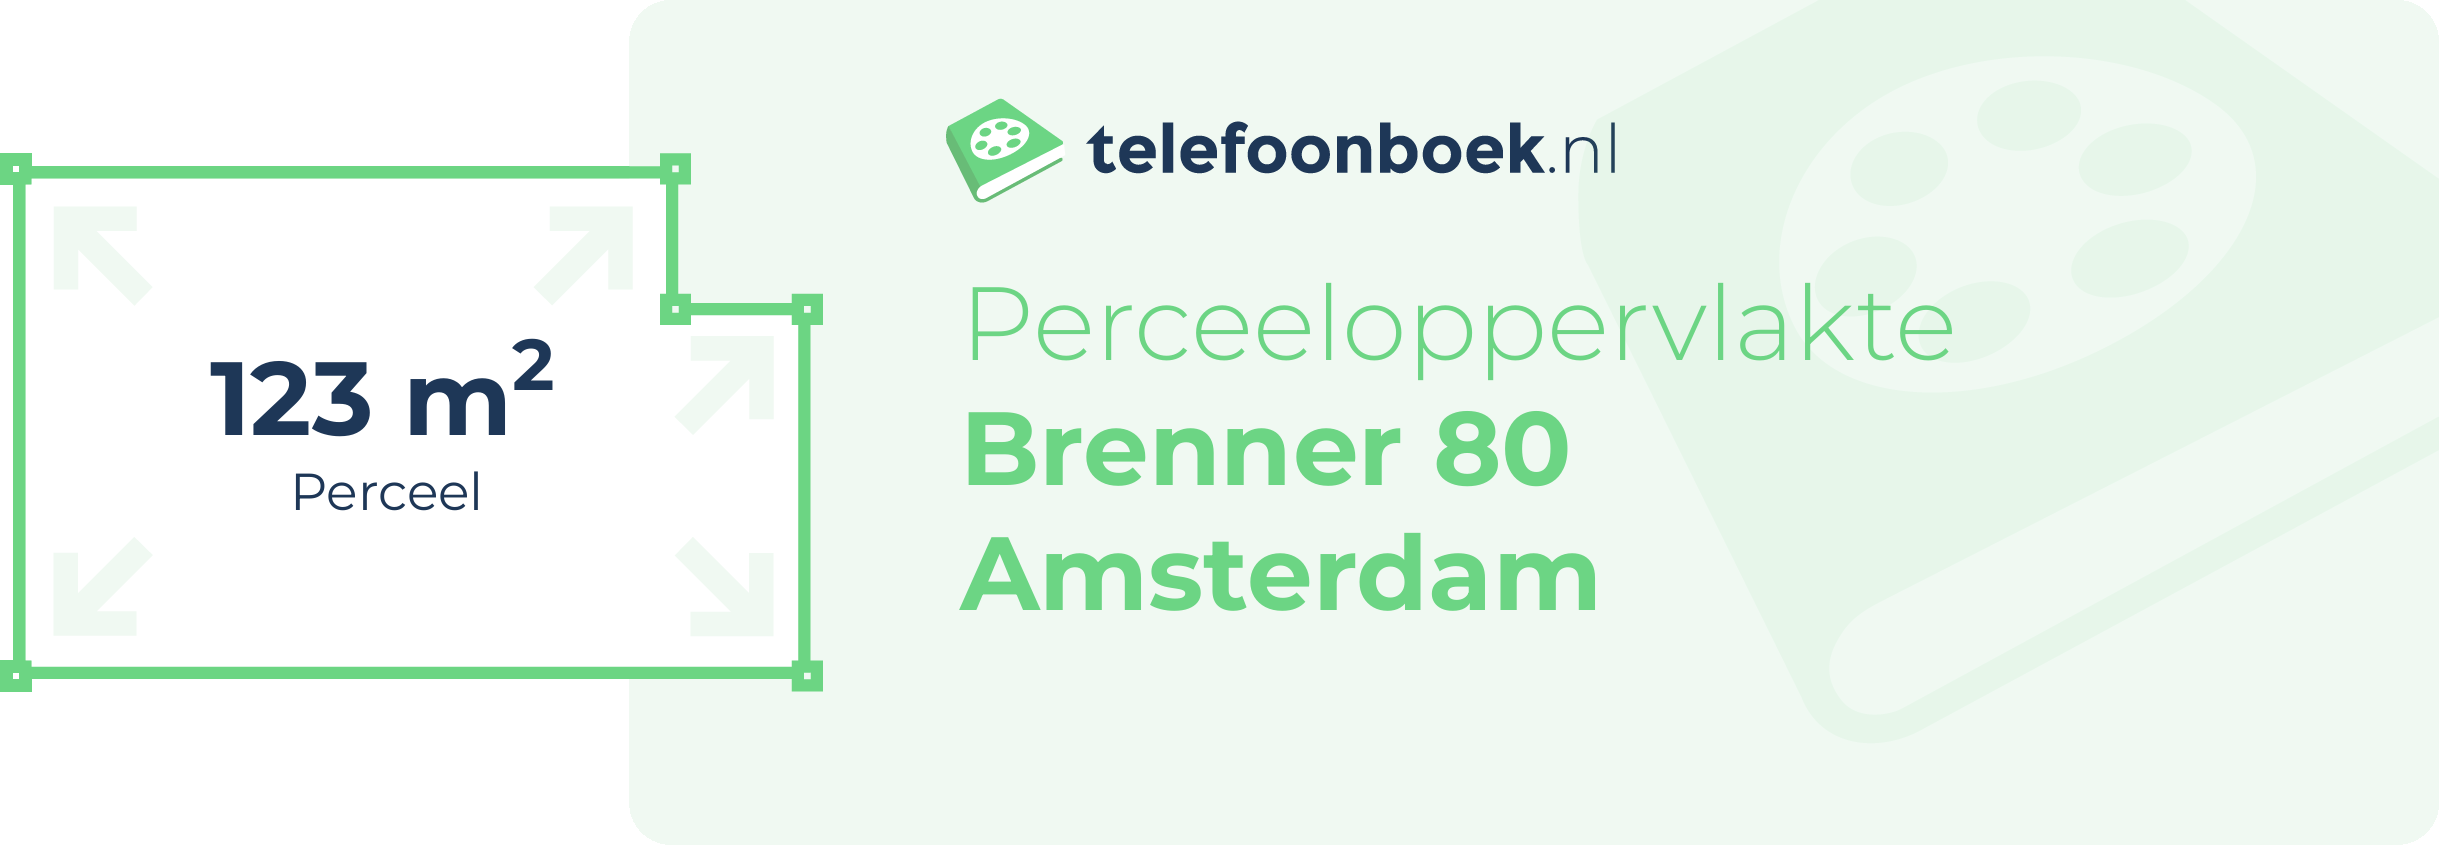 Perceeloppervlakte Brenner 80 Amsterdam